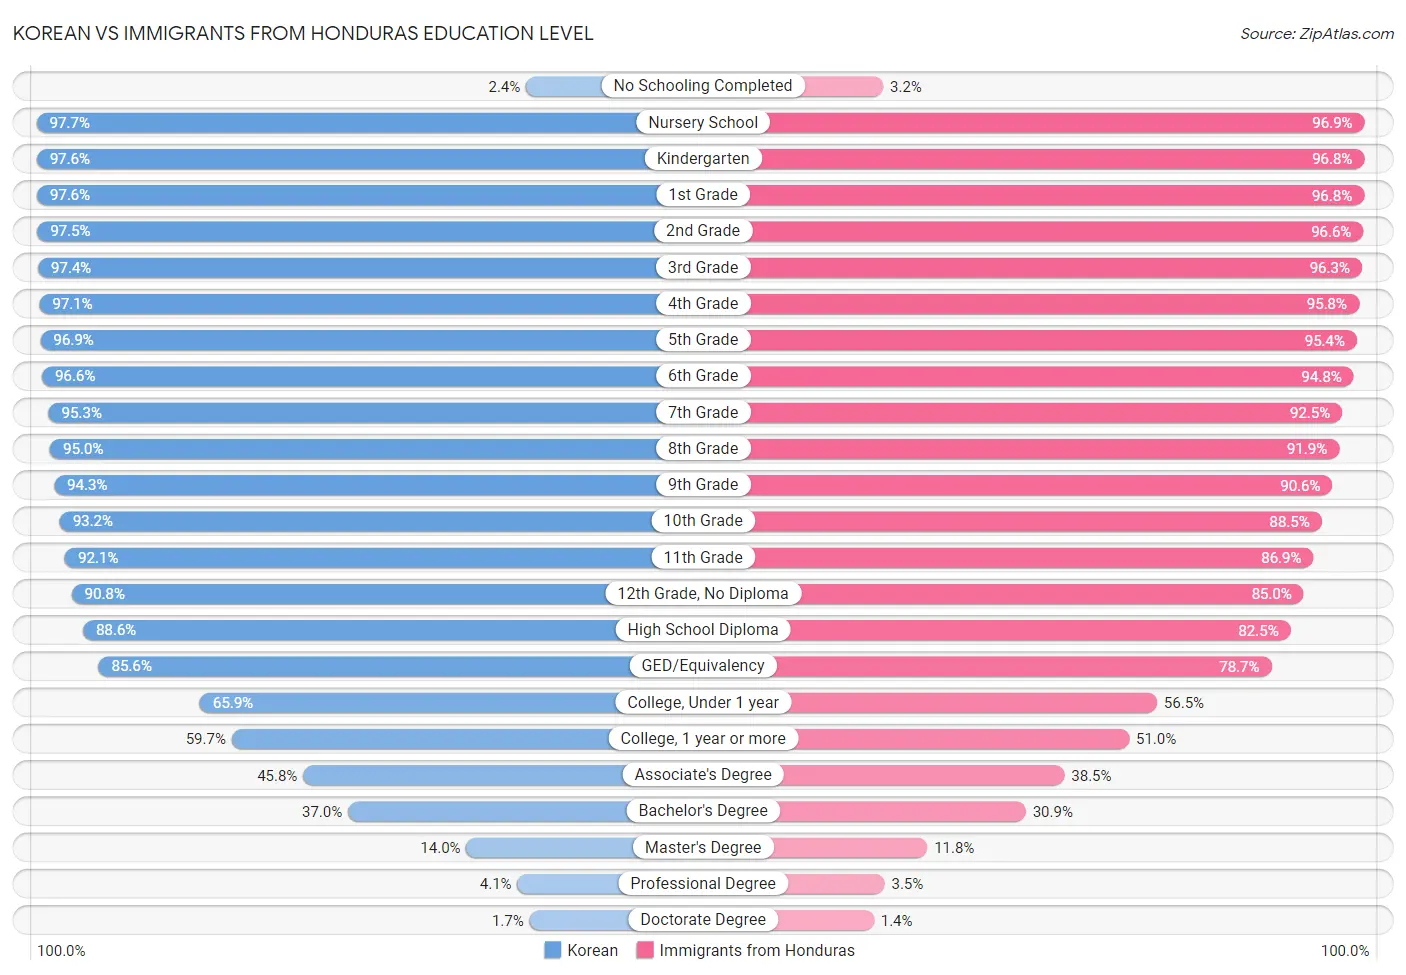 Korean vs Immigrants from Honduras Education Level